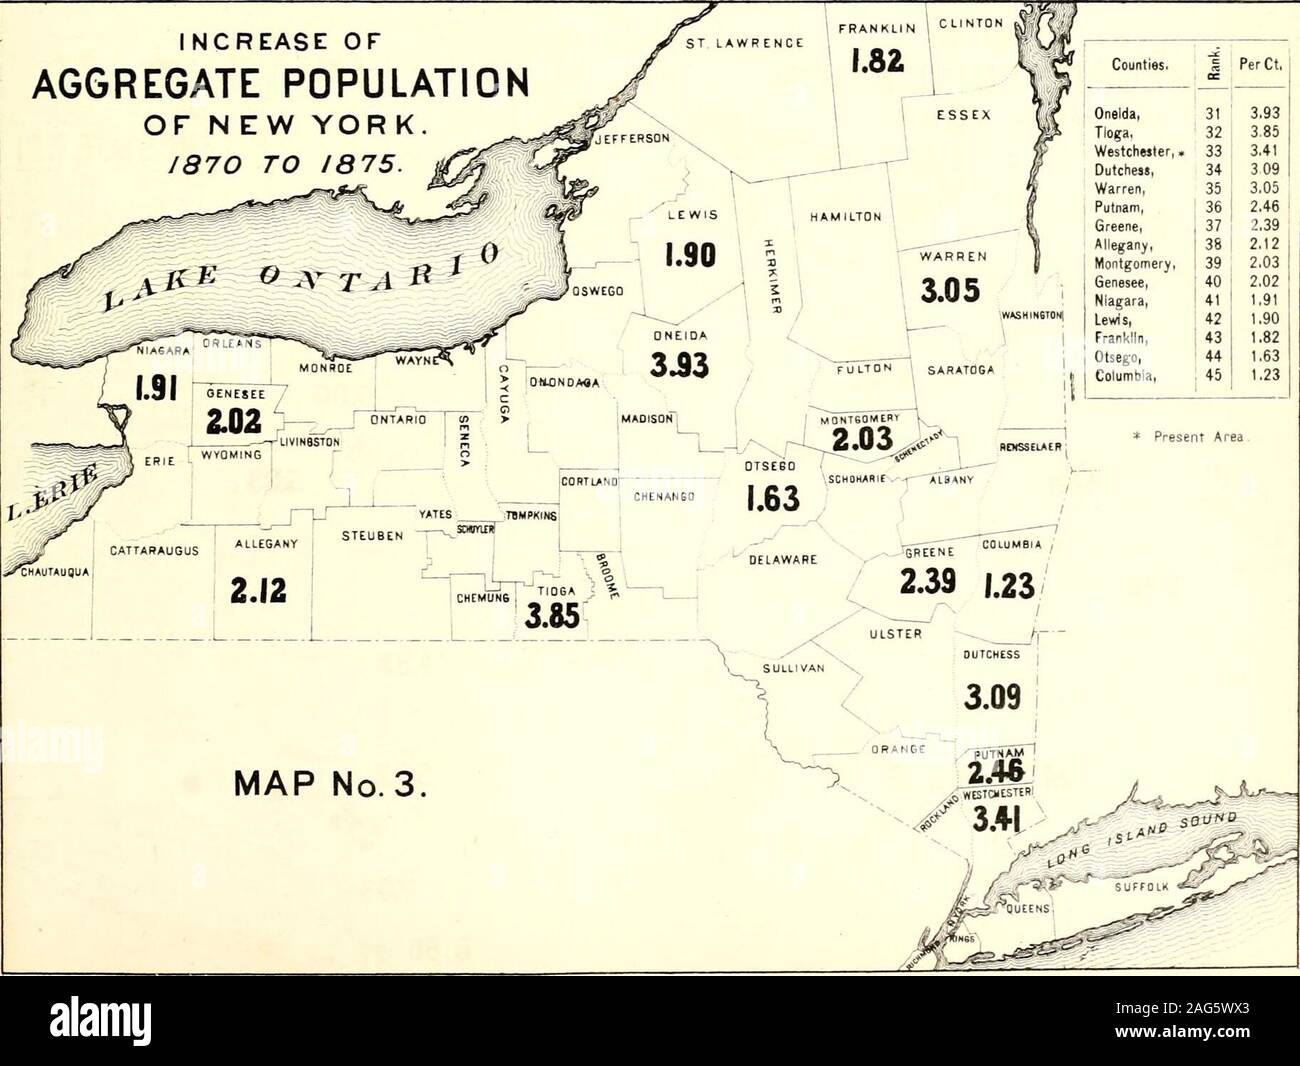 . Censimento della popolazione dello stato di New York per il 1875. Aumento della popolazione di aggregazione di N EW YORK1870 a 1875. _^ contee. & PerCt, Oneida, 31 3,93 Tioga. 32 3,85 Westchester,. 33 3.41 Dutchess, 34 3 09 Warren, 35 3.05 Putnam, 36 2.46 Greene, 37 2.39 Allegany, 38 2.12 Montgomery, 39 2,03 Senesee, 40 2.02 Niagara, 41 1,91 Lewis, 42 t.90 Frani&lt;lln, 43 1.82 Otsego, 44 1,63 Columbia, 45 1.23. ^ MapB. Aumentare OK popolazione nativa DI NEW YORK. 1870 al 1875. Aumento della popolazione nativa di New York1870 a 1875. 7^ / ST LAWRtNCi: 1 Franklin Foto Stock